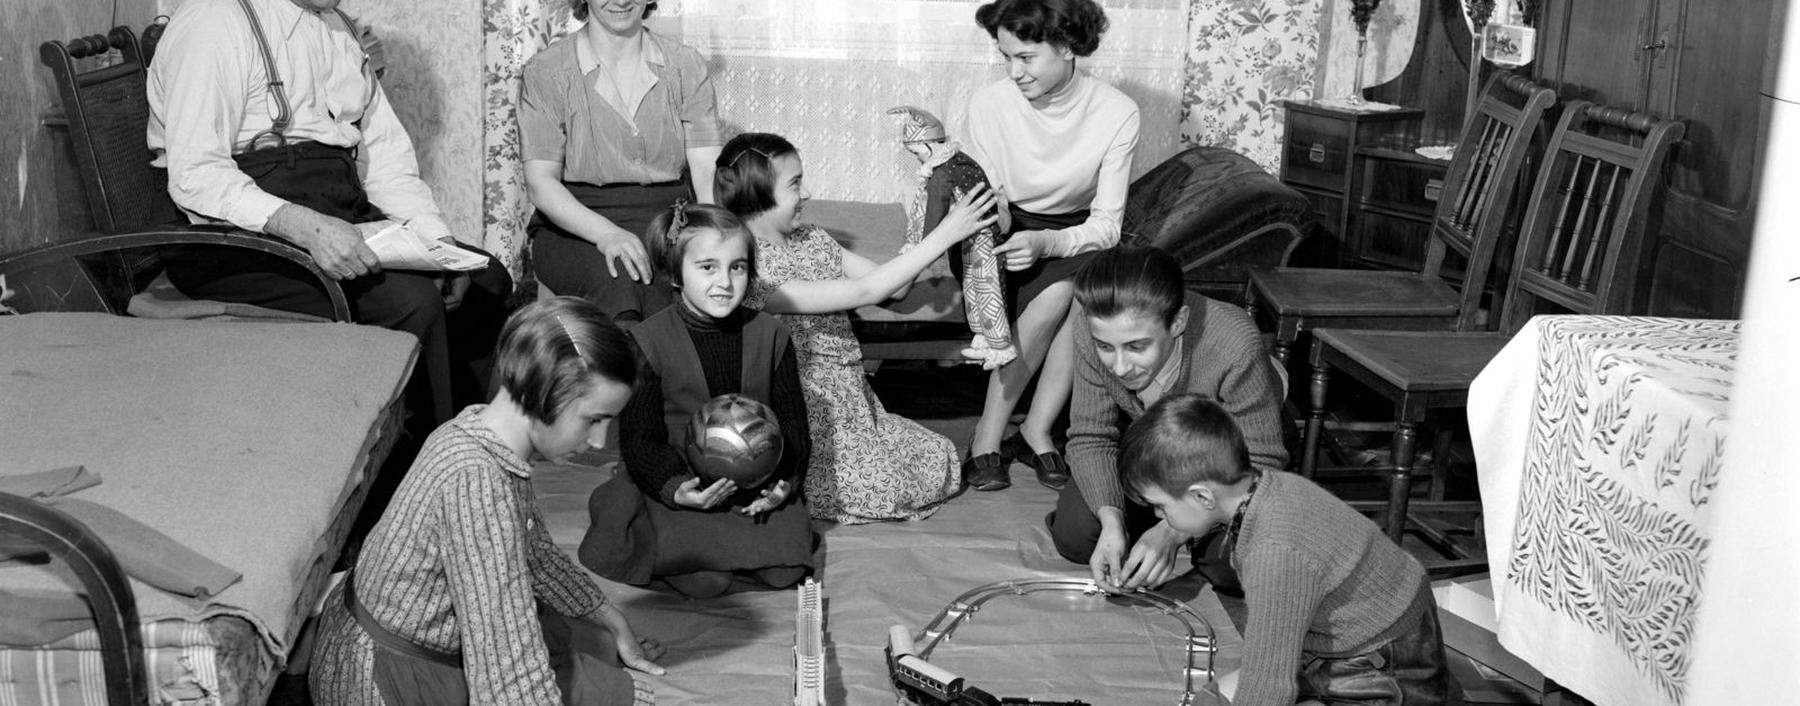 Wohnzimmer einer Familie aus dem Jahr 1955. Für Frauen waren Sicherheit und Stabilität wichtig, es kam zu einer hohen Zahl von Eheschließungen.